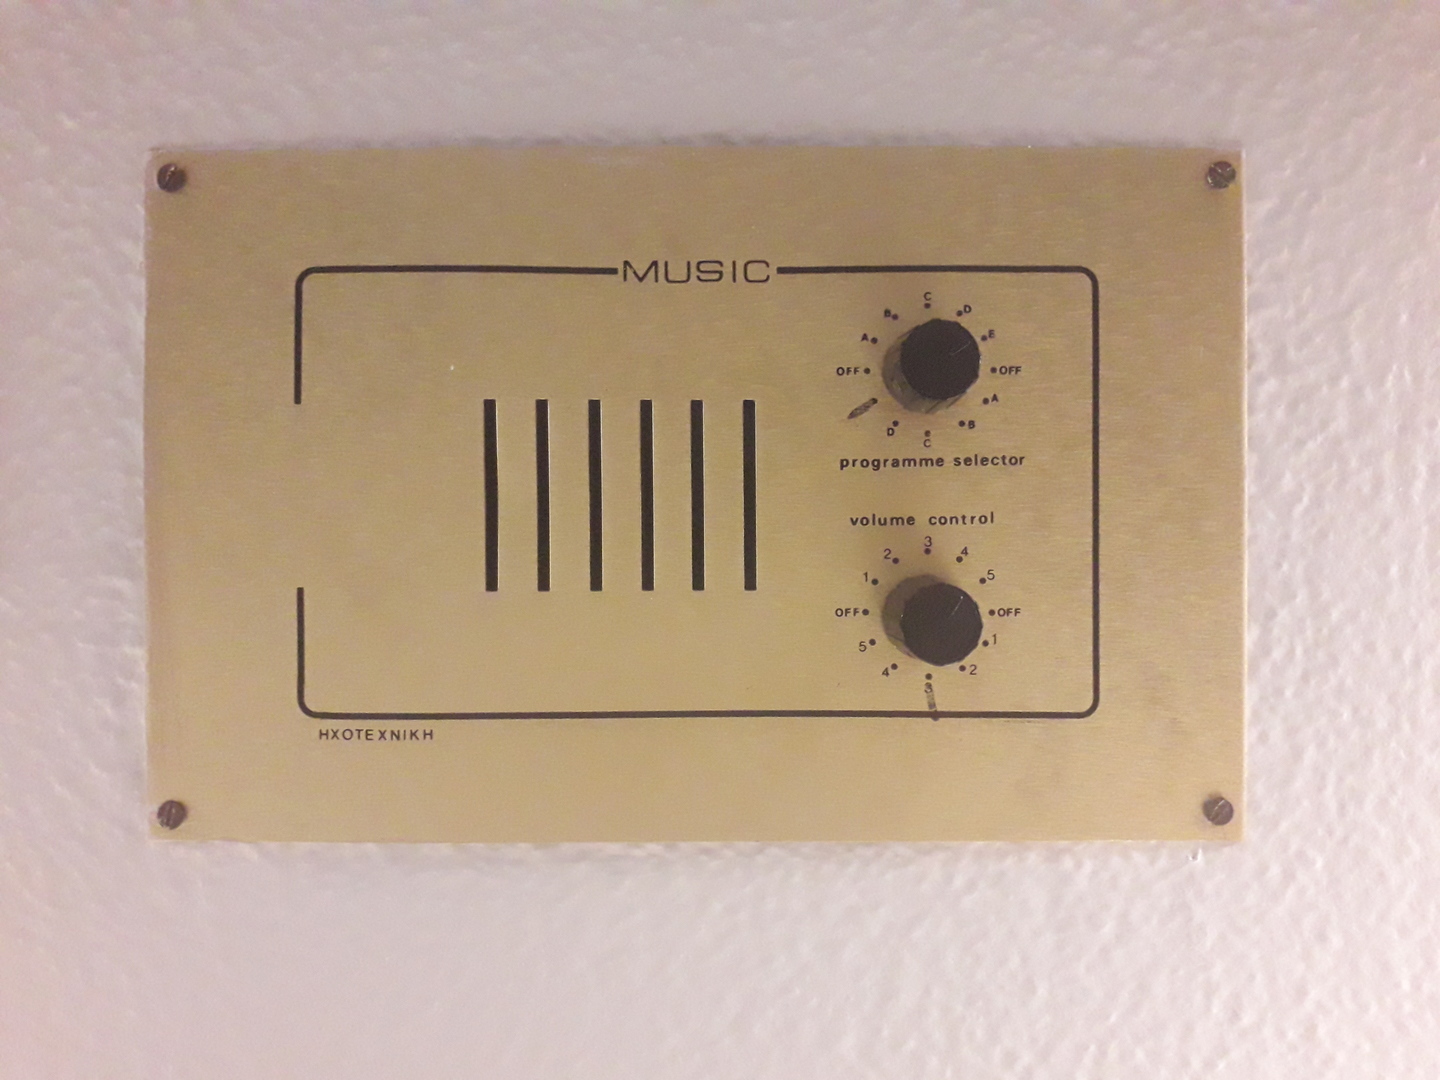 Image 59 : Plaque sur un mur avec des boutons